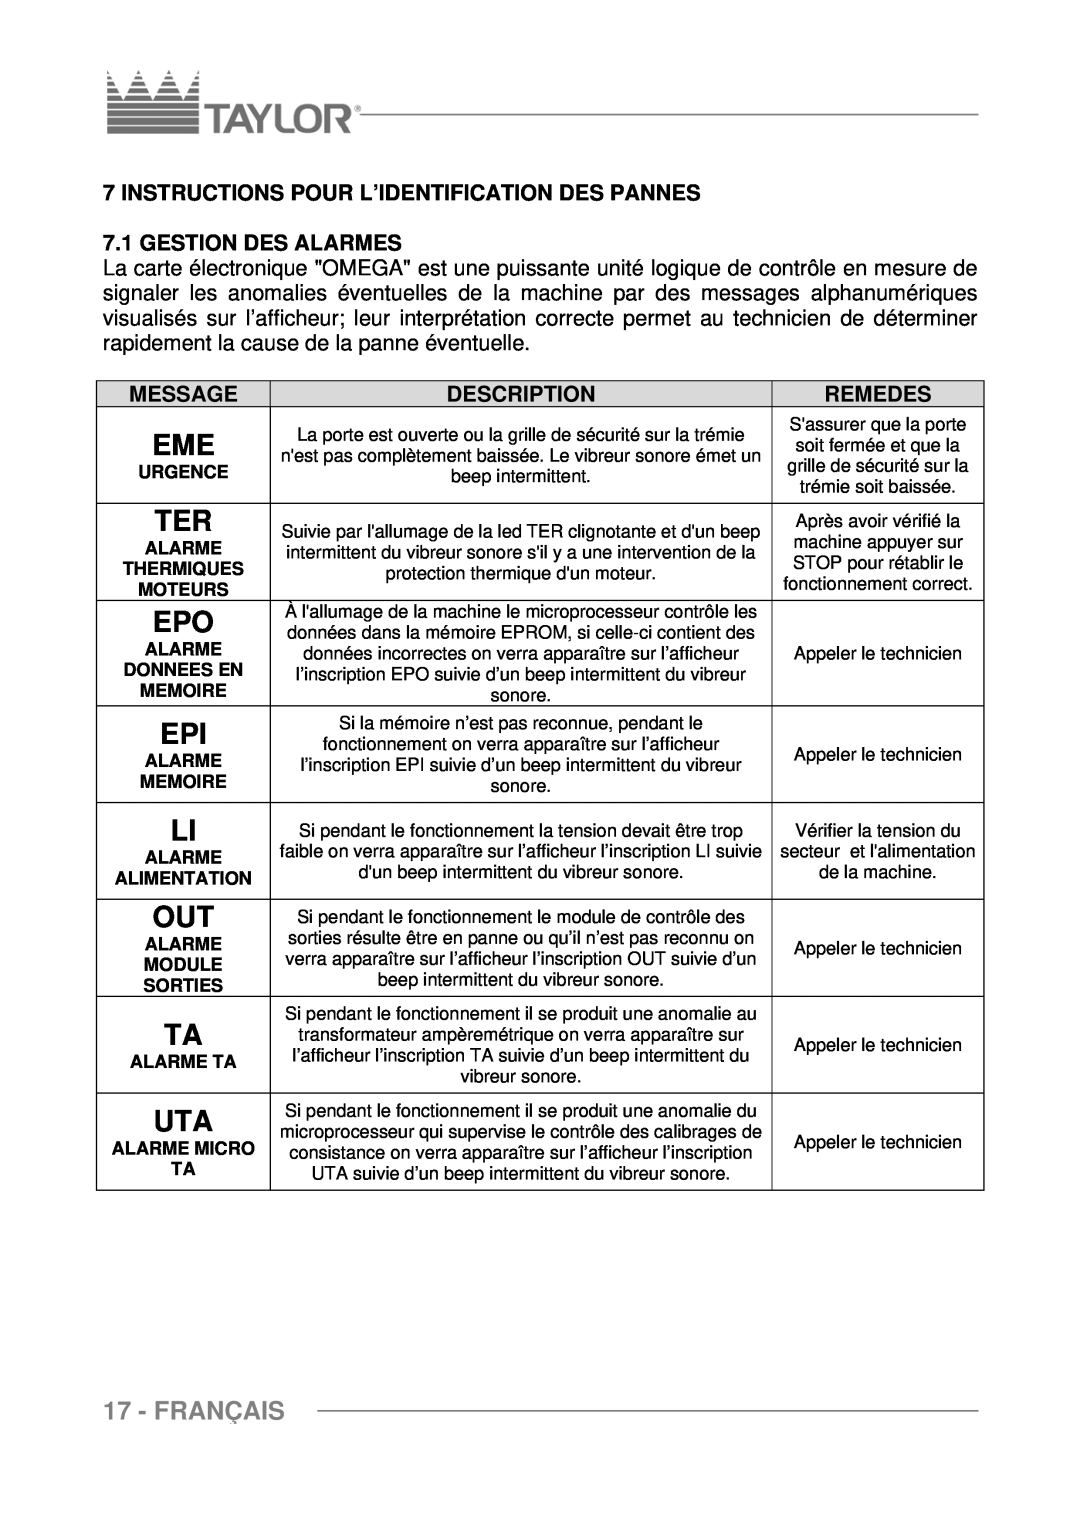 Taylor C117 Français, Instructions Pour L’Identification Des Pannes, Gestion Des Alarmes, Remedes, Message, Description 